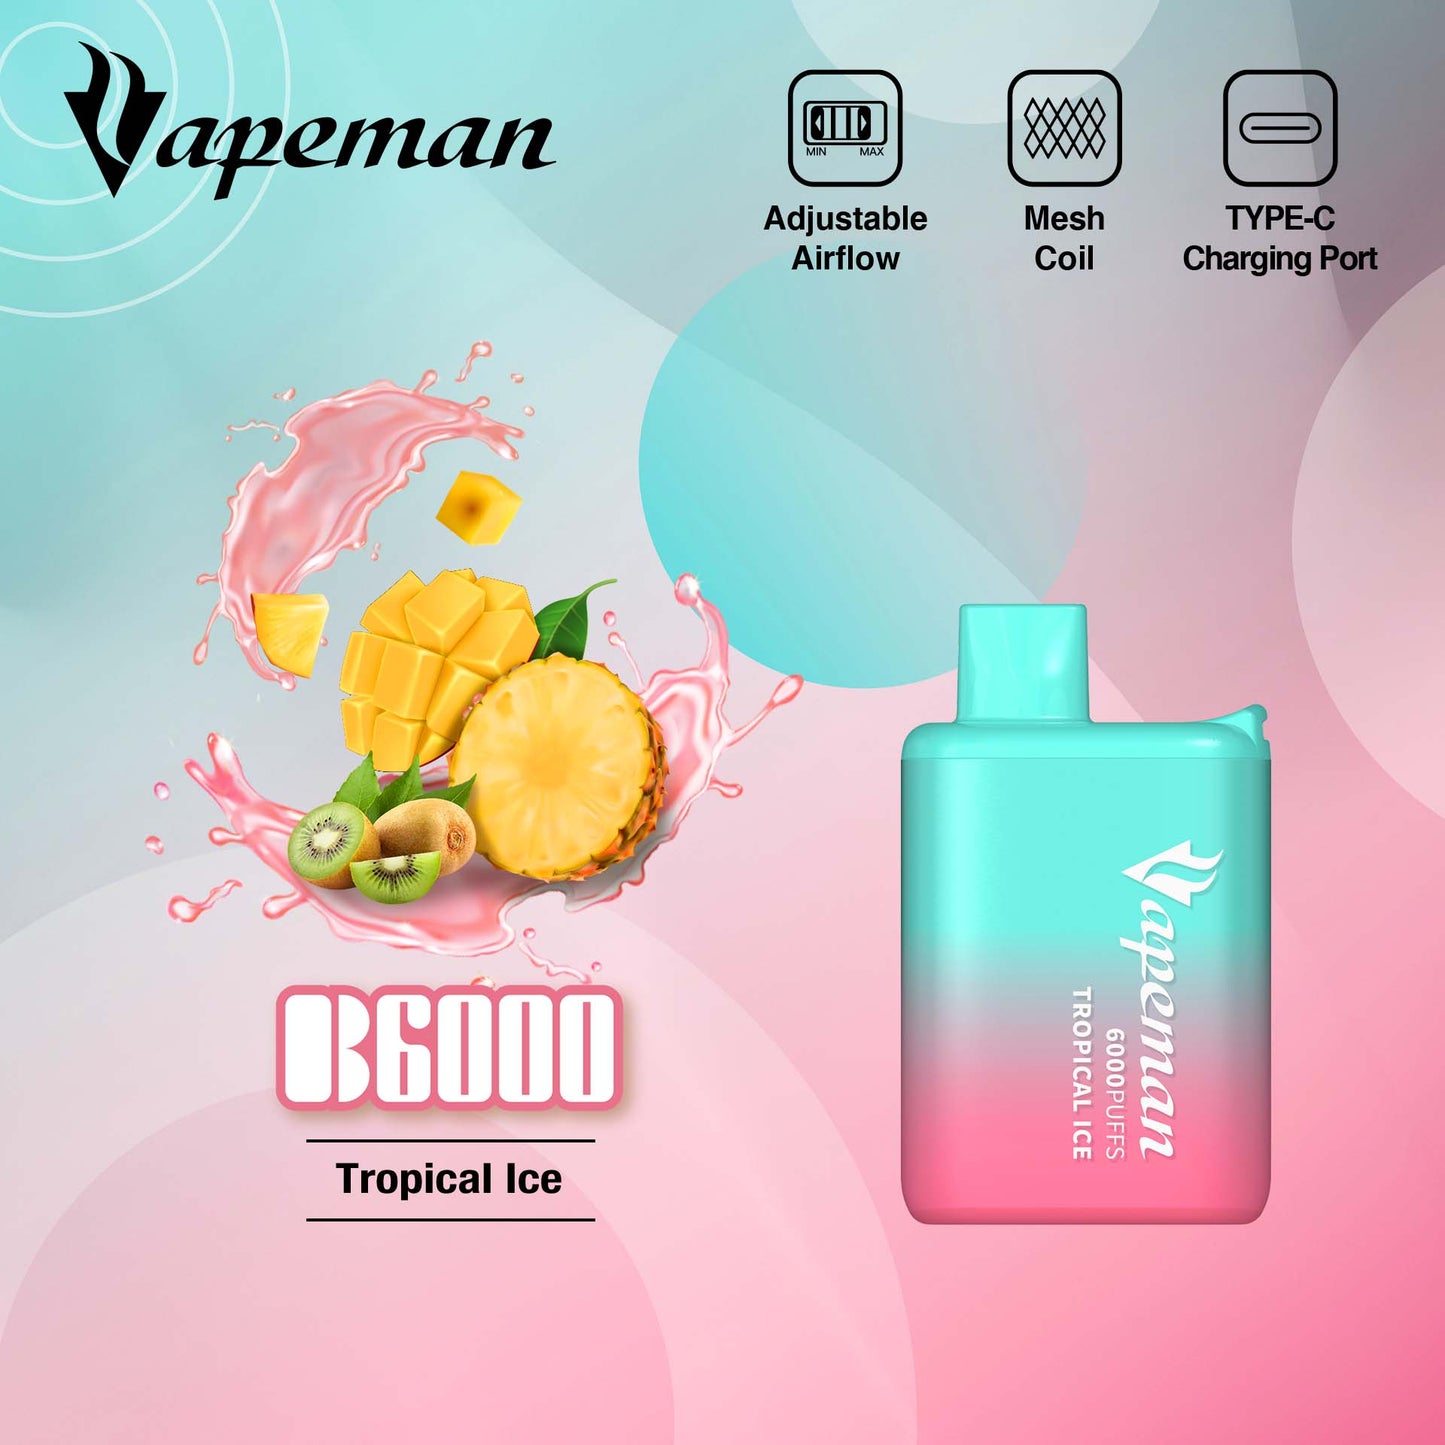 Vapeman - B6000 - Tropical Ice -  Disposable Vape Device - Salt Nicotine 